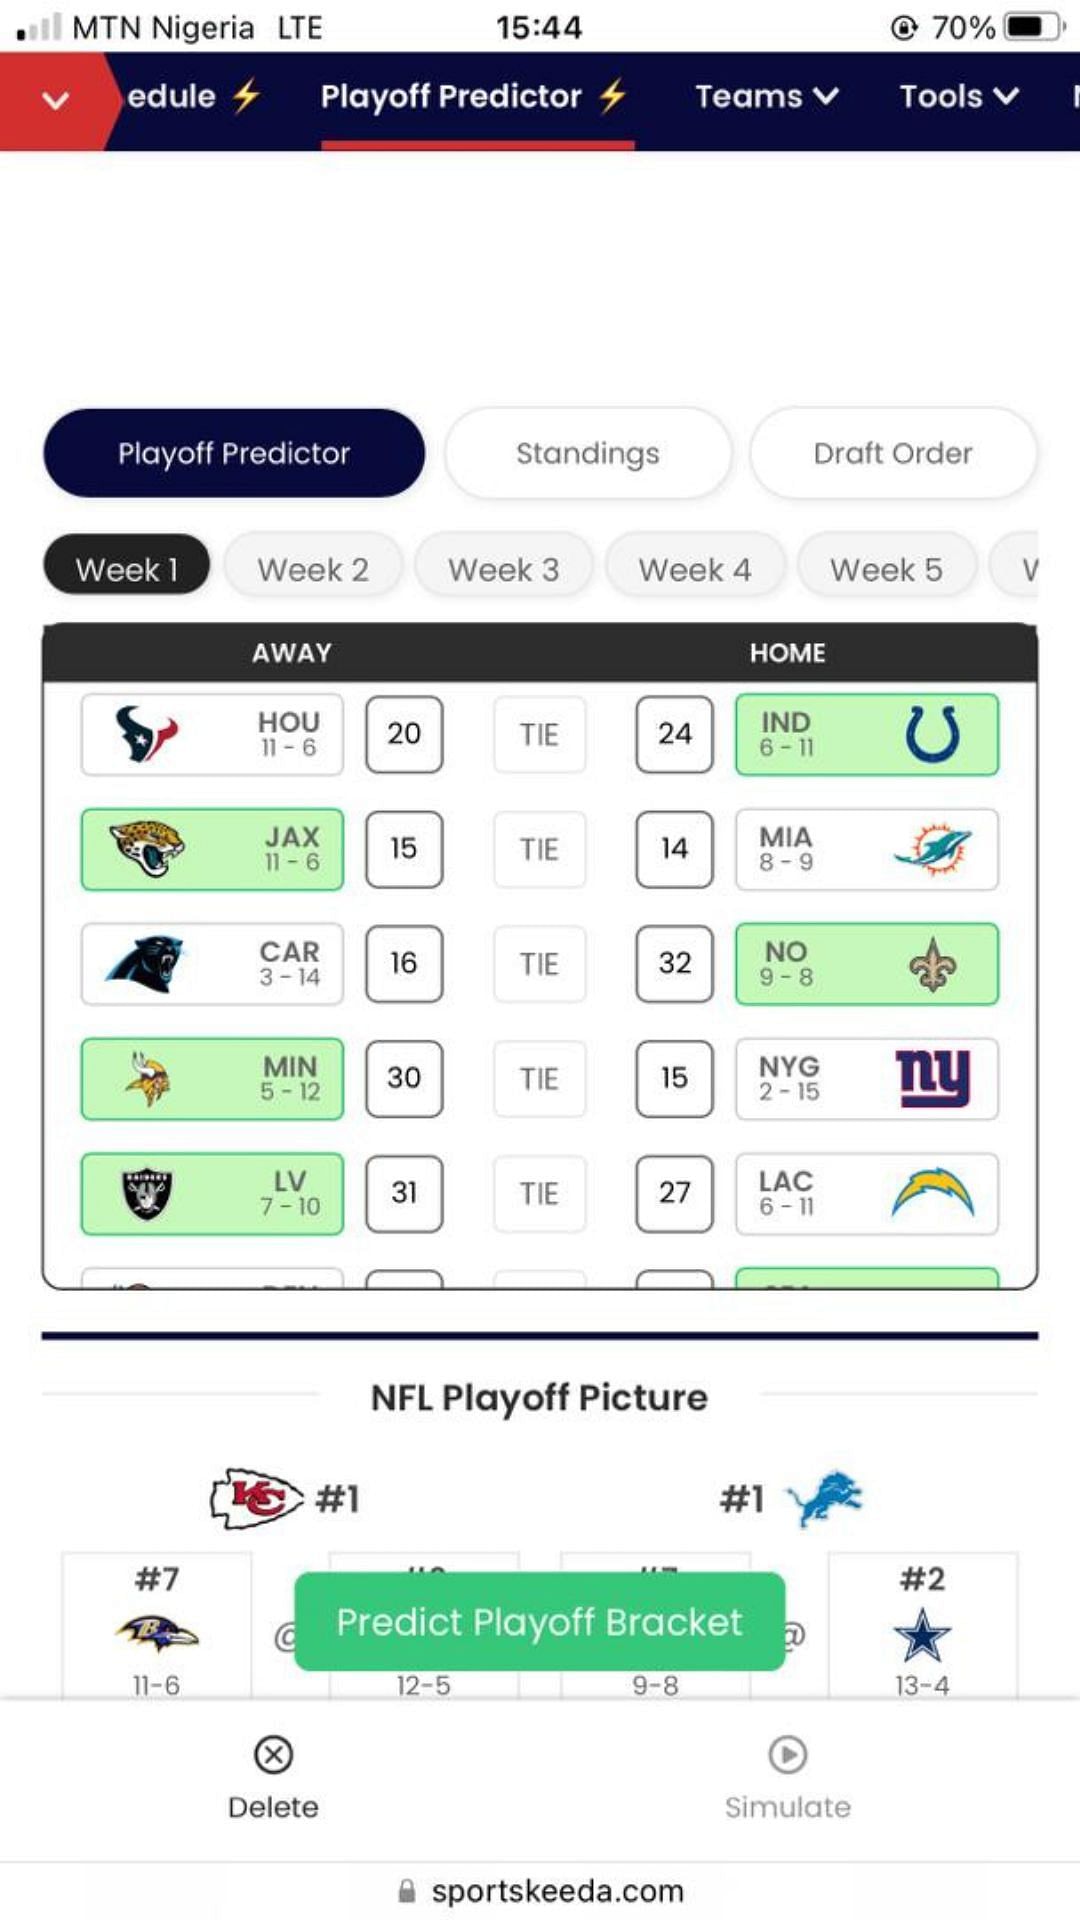 Sportskeeda NFL Playoff Predictor 2